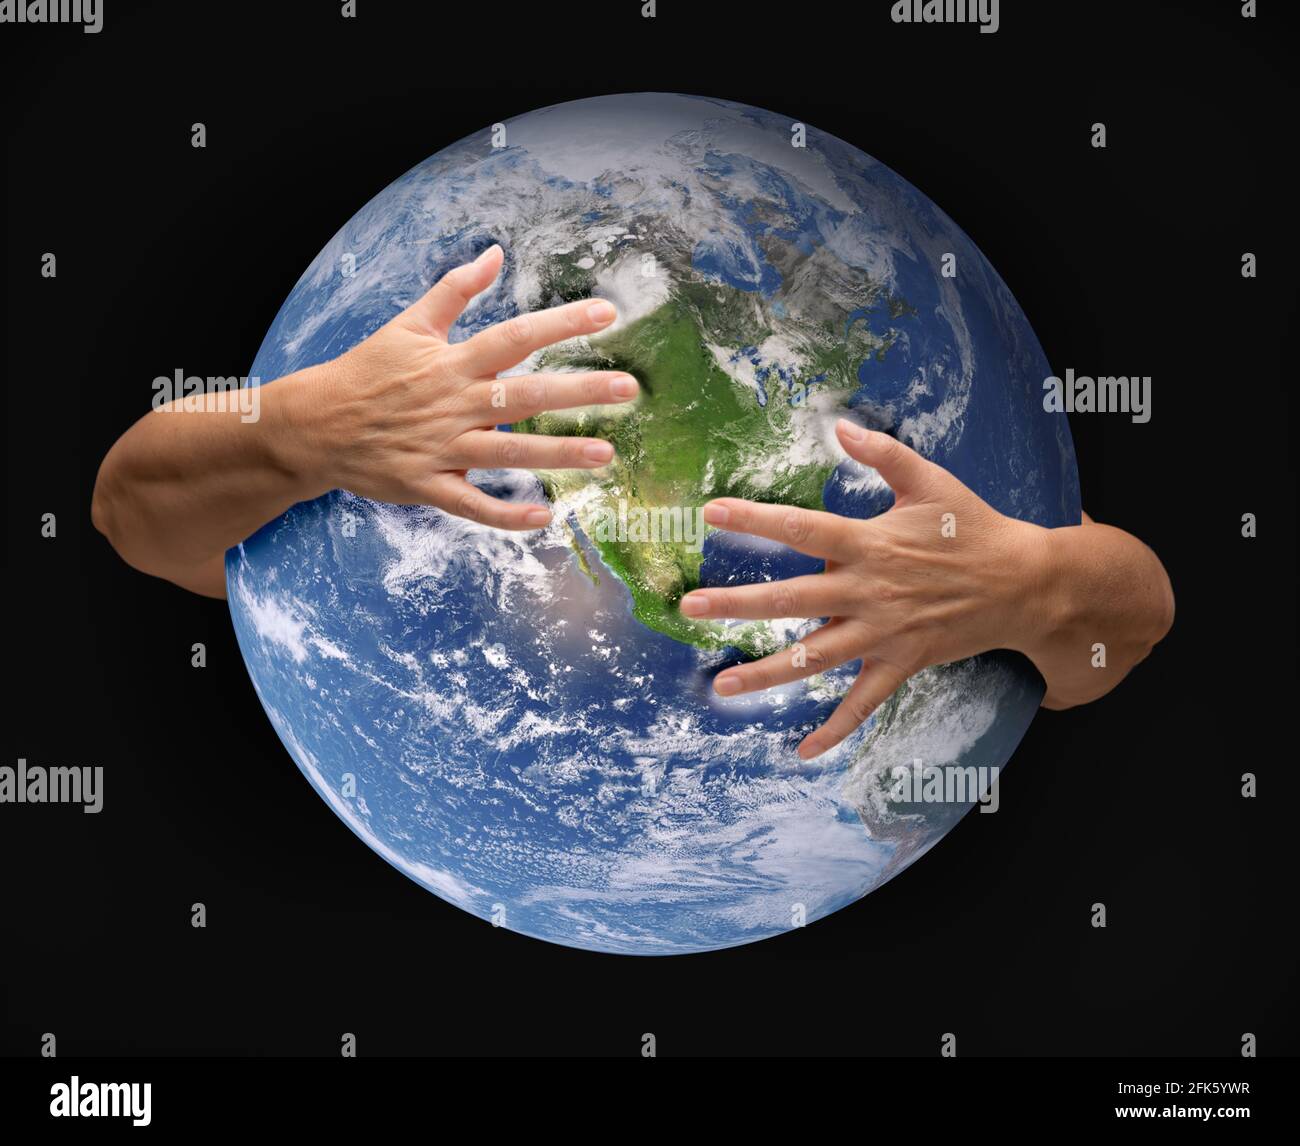 Menschliche Arme umarmen und nähren den Planeten Erde. Stockfoto